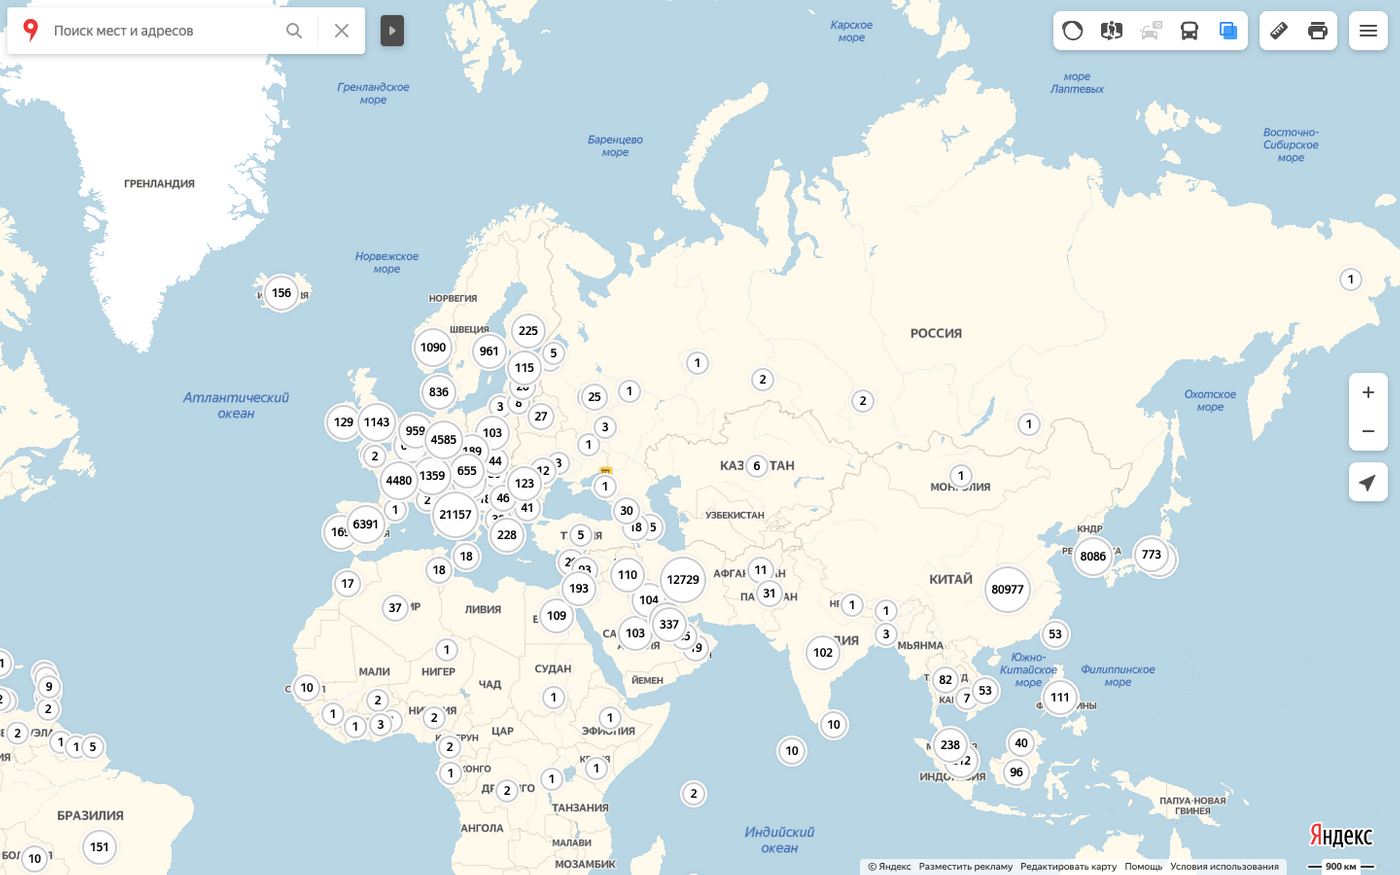 Указать на карте где. Карта биологических лабораторий США В мире. Биолаборатории США на карте мира. Биолаборатории США В мире на карте. Биолаборатории США карта.